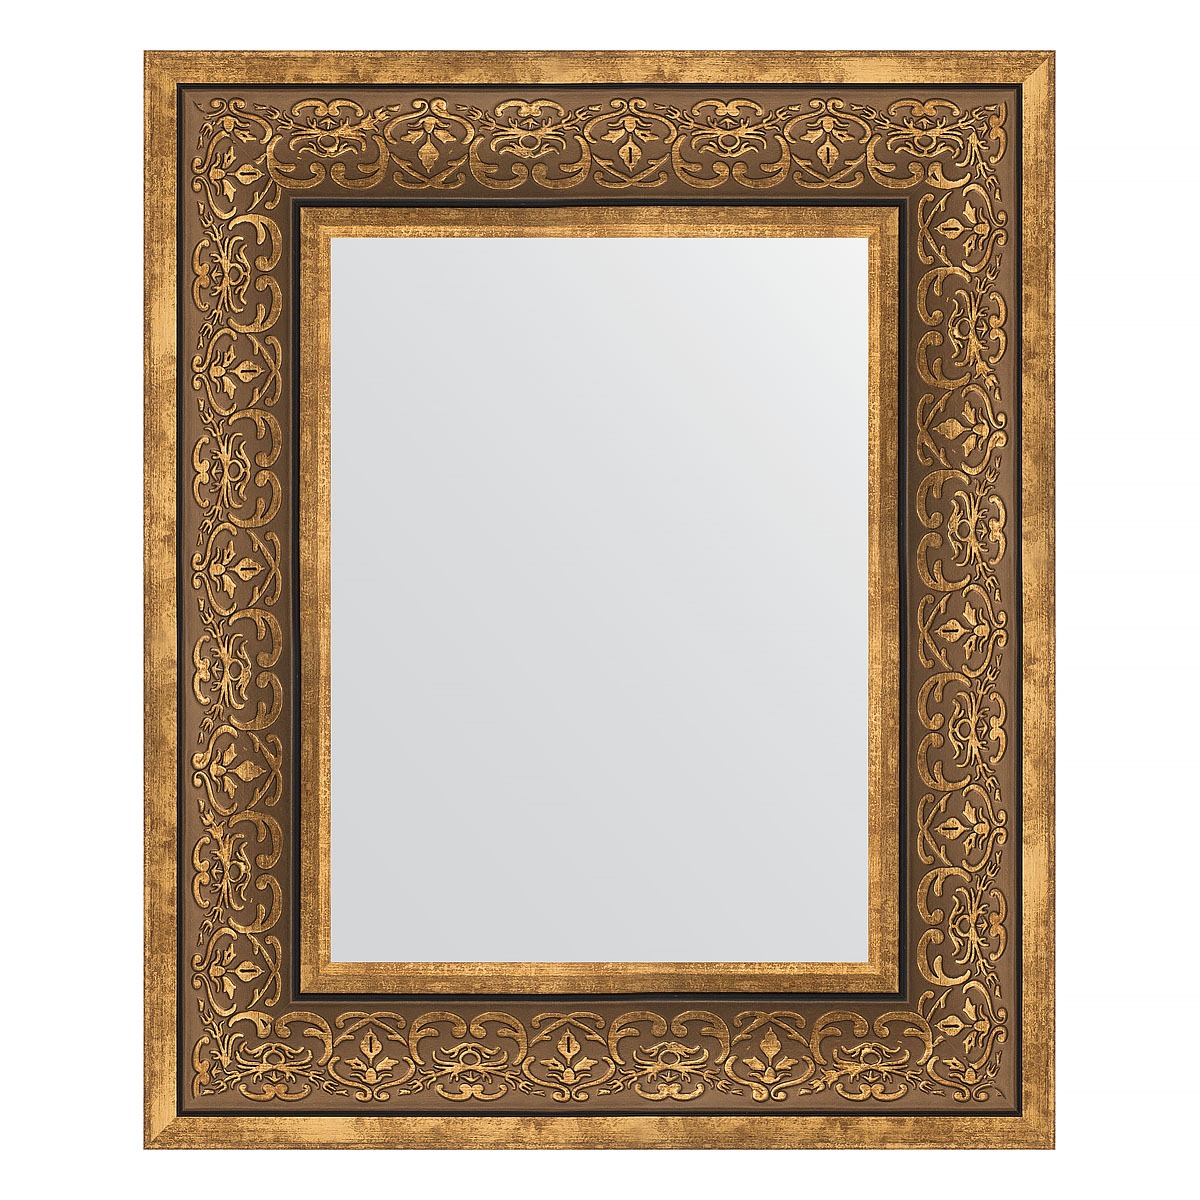 Зеркало в багетной раме Evoform вензель бронзовый 101 мм 49х59 см зеркало 49х59 см травленая бронза evoform exclusive by 3368